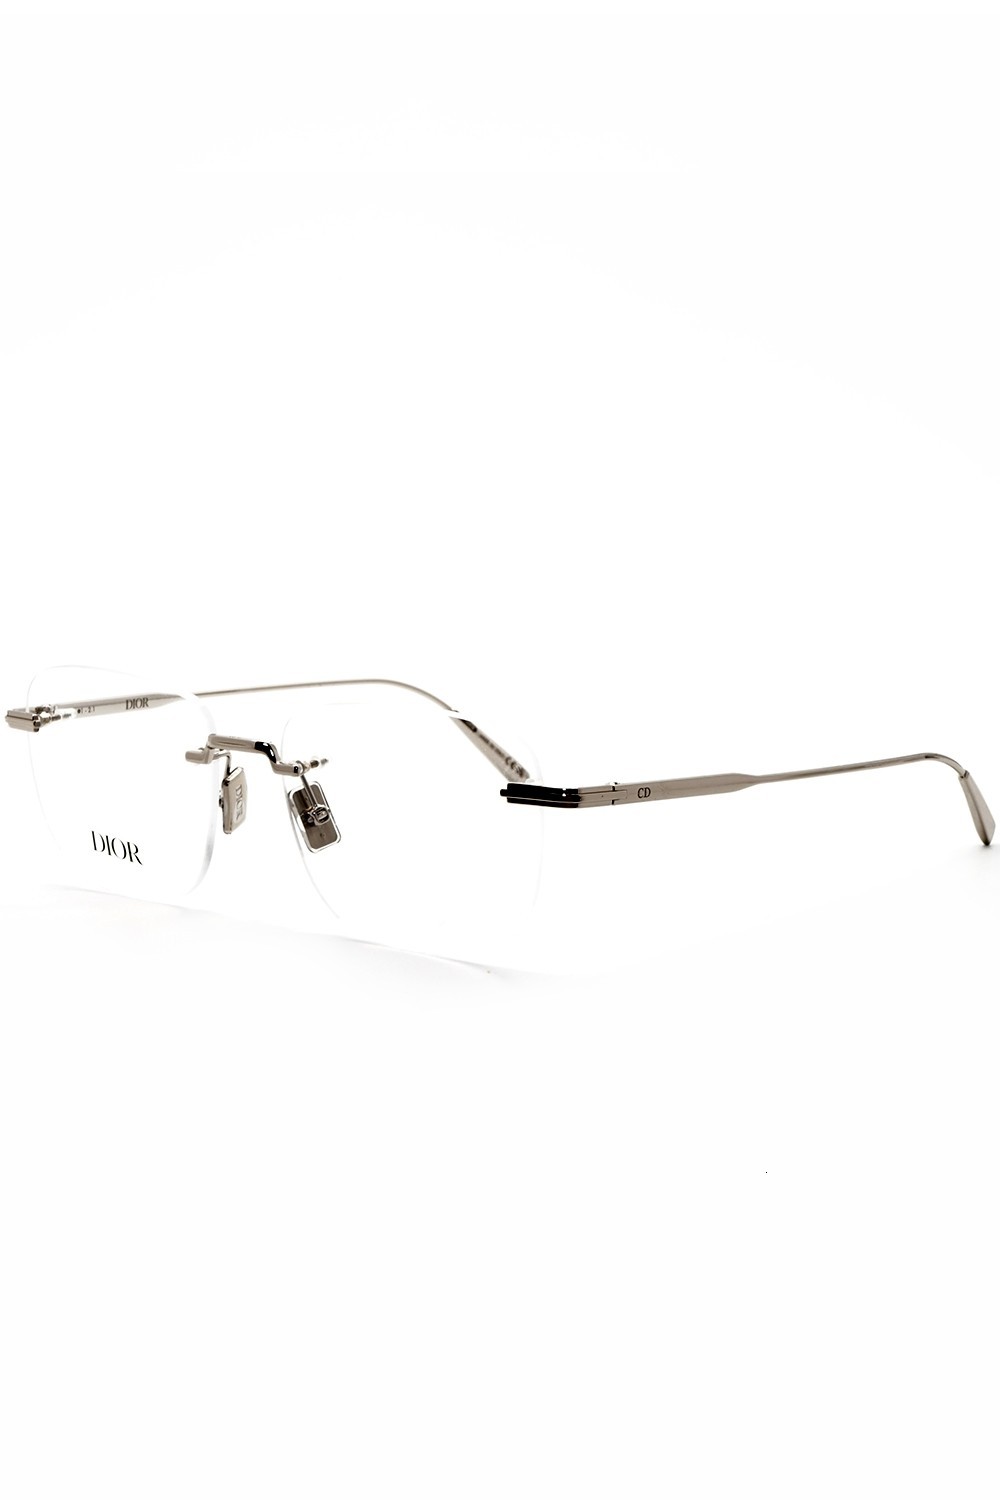 Christian Dior - Occhiali da vista in metallo glasant squadrati per uomo silver